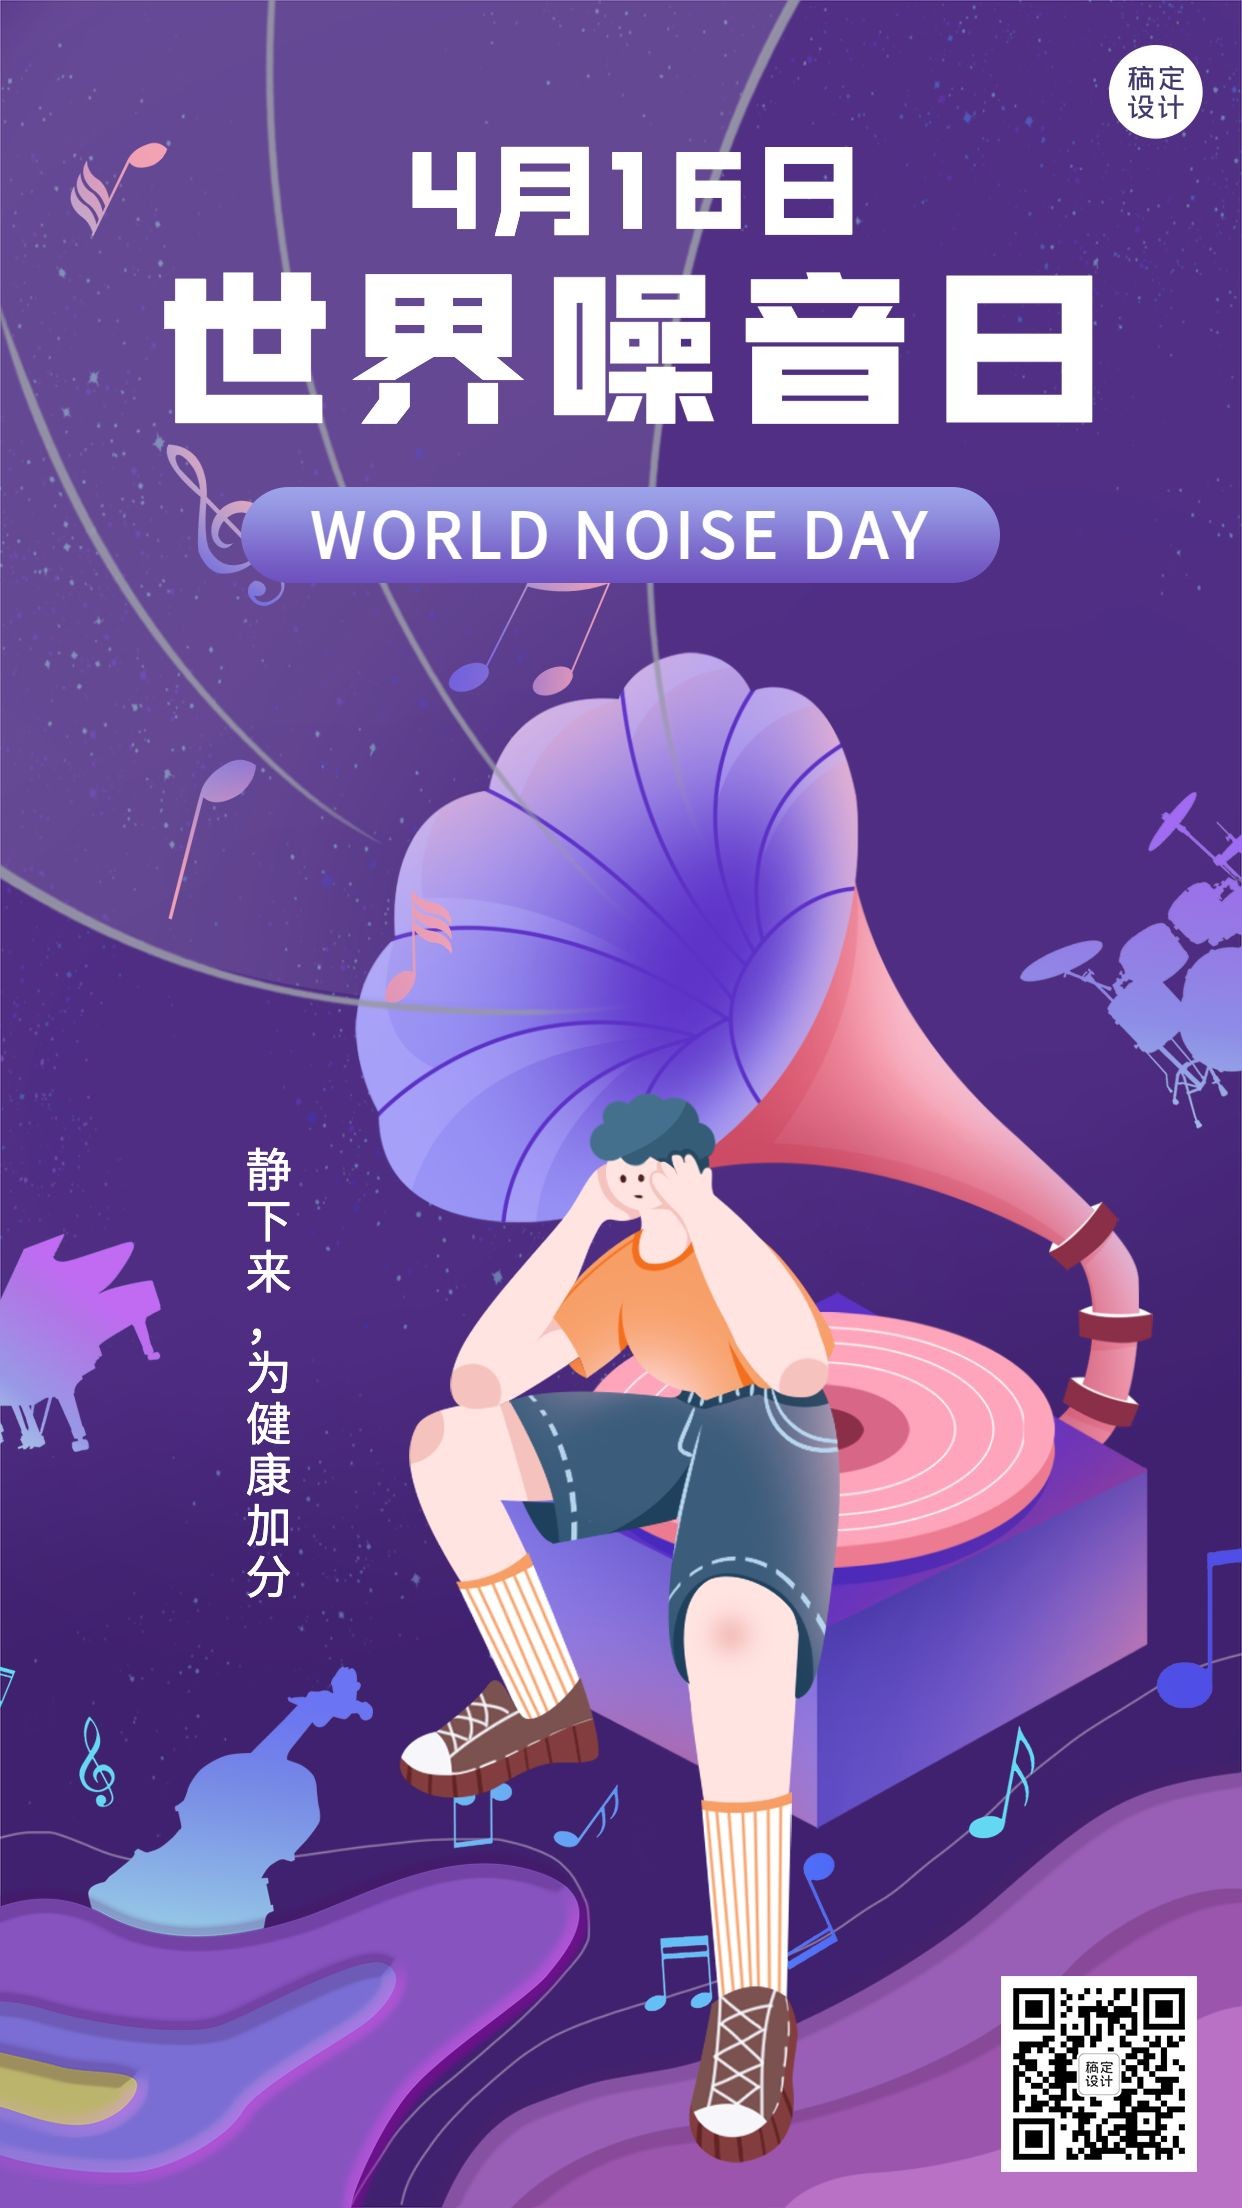 世界噪音日节日宣传插画手机海报预览效果